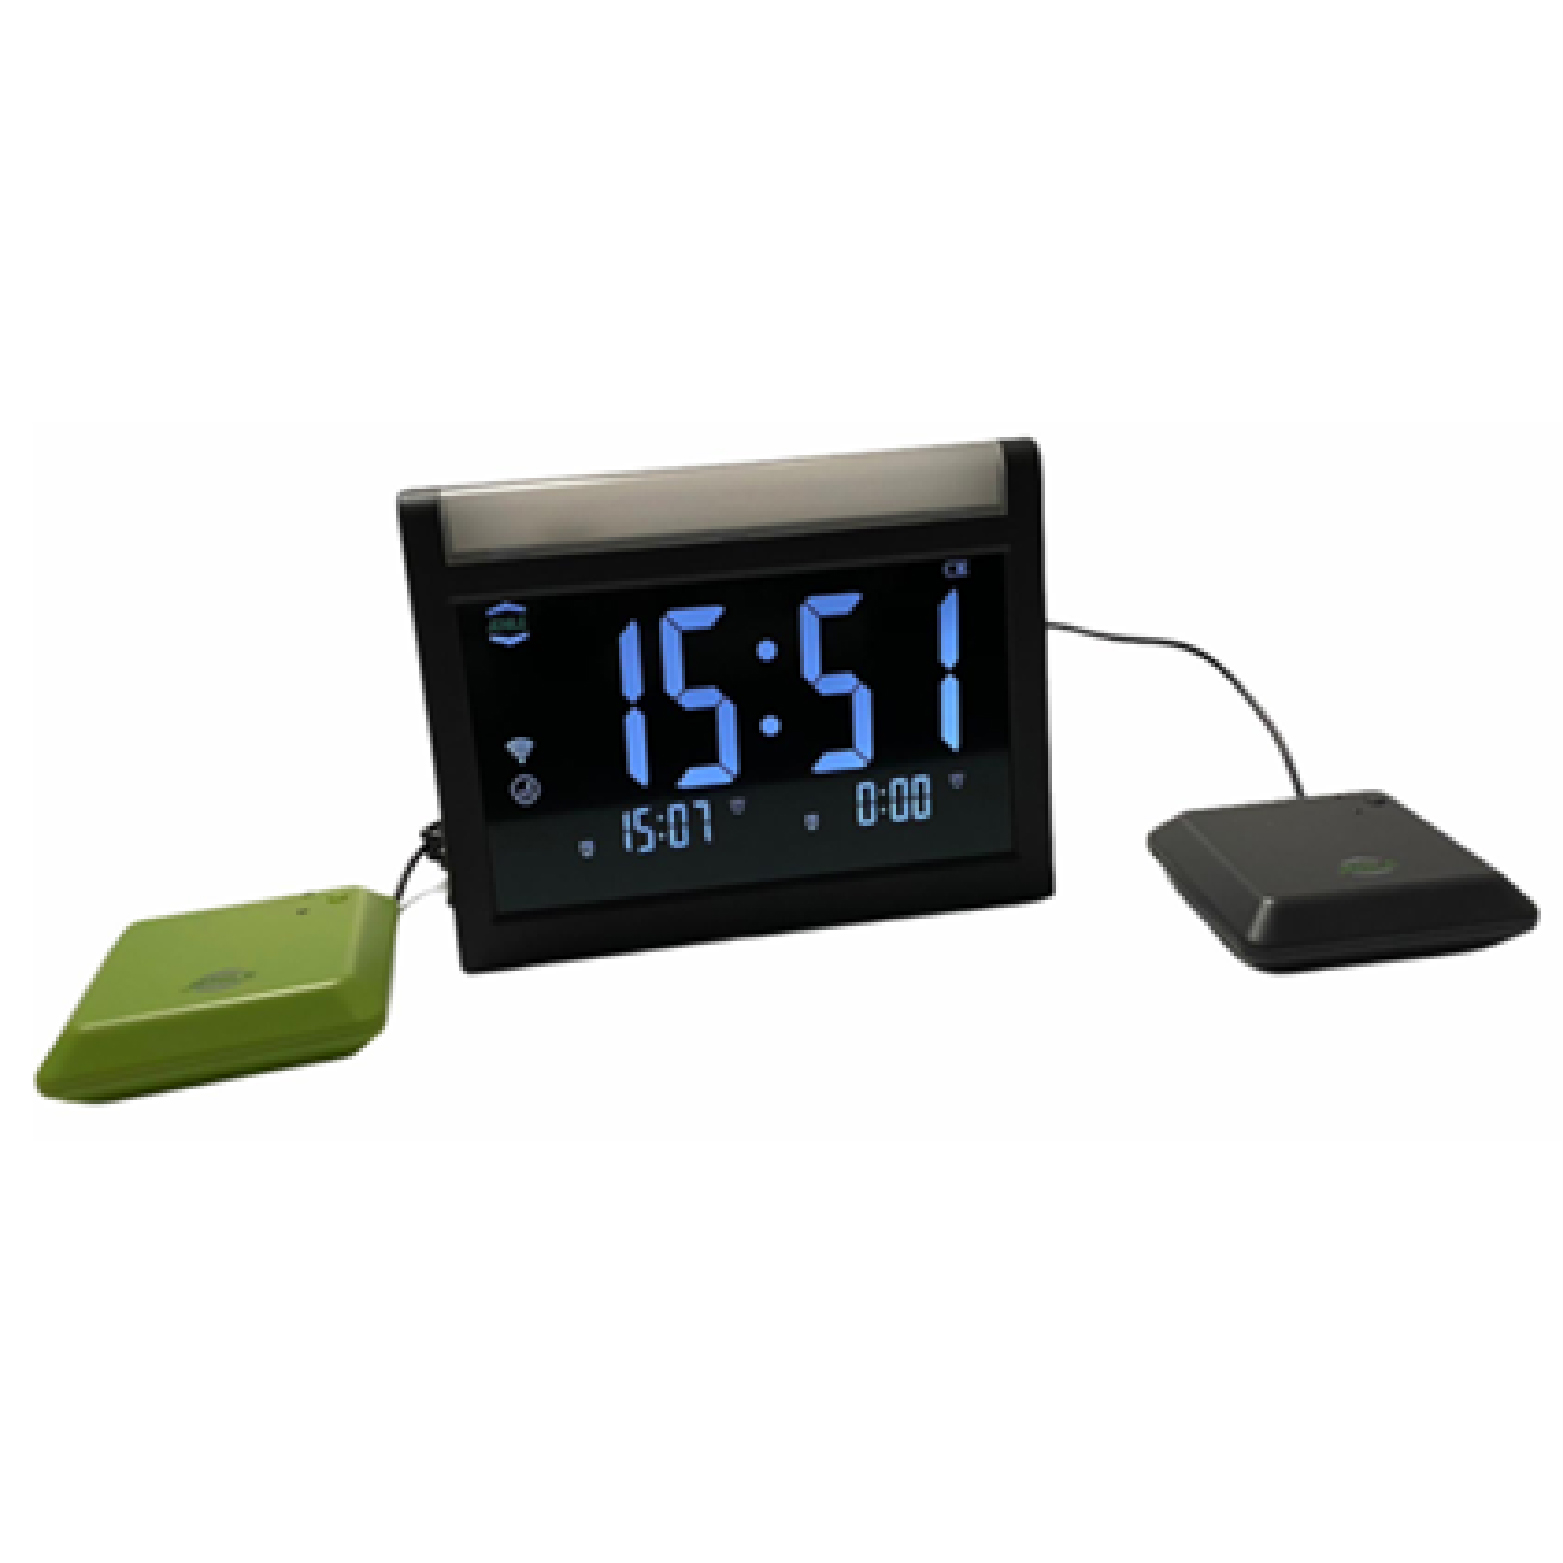 Alarm clock receiver